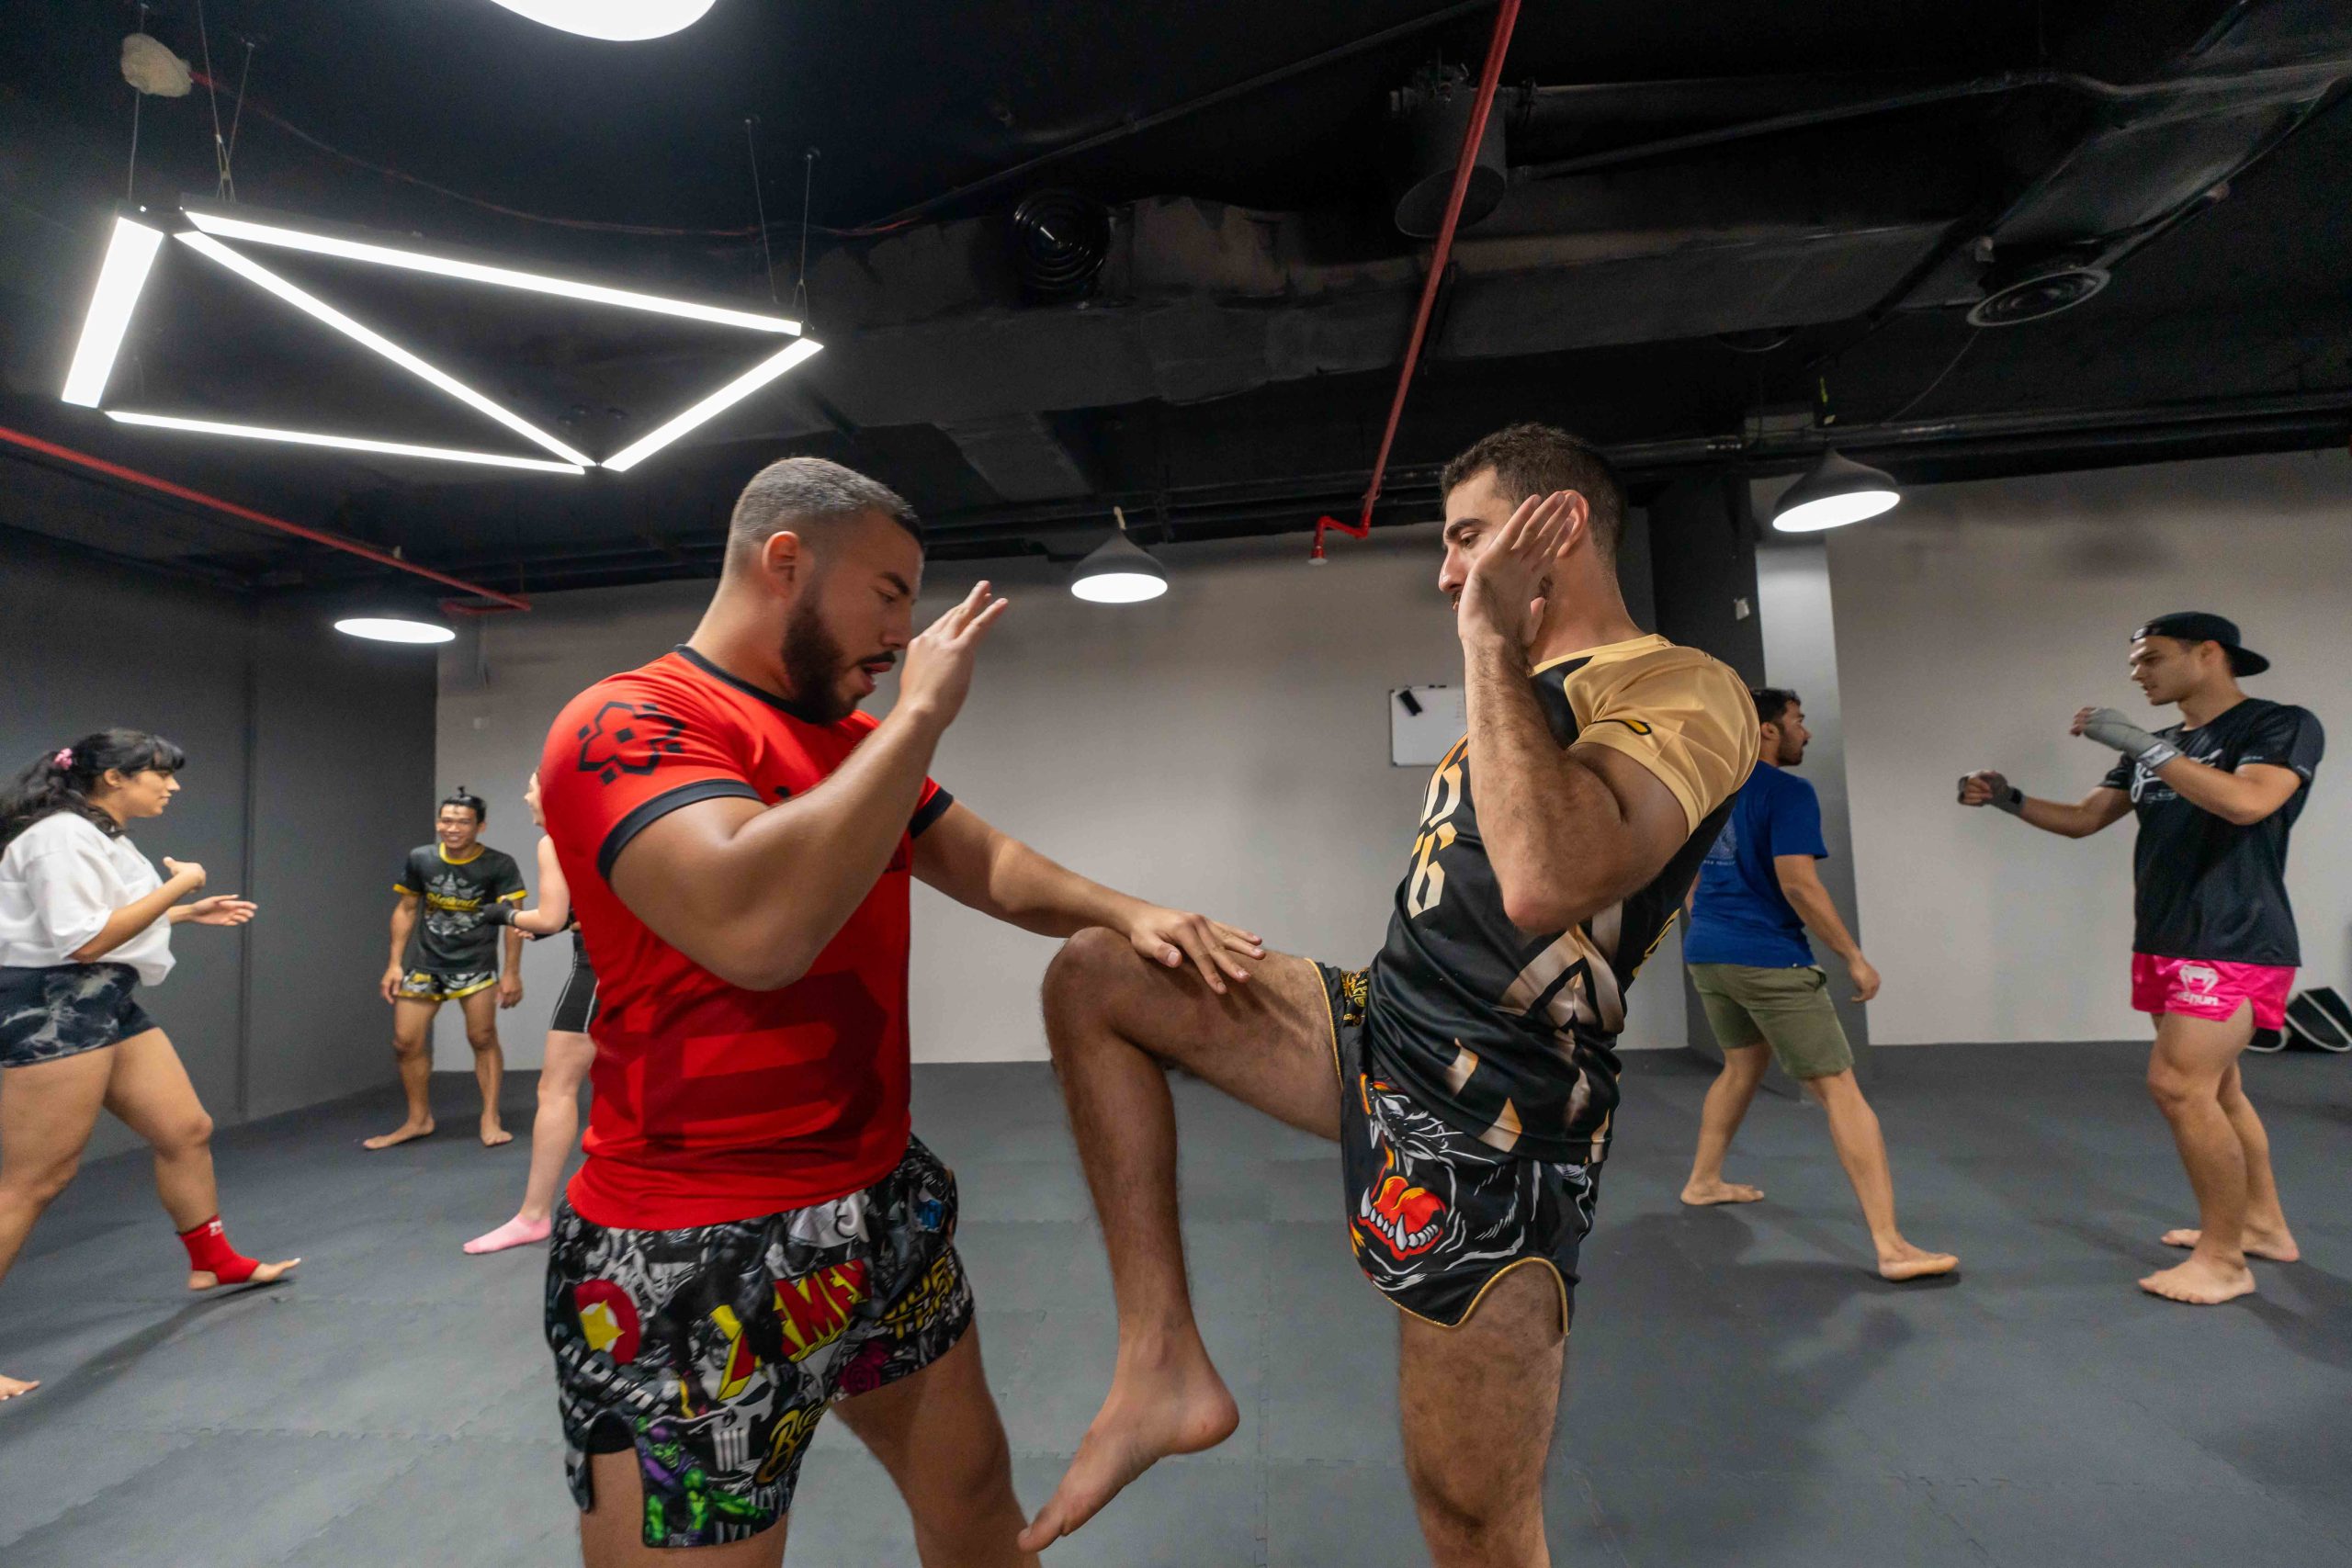 MMA gym Dubai classes